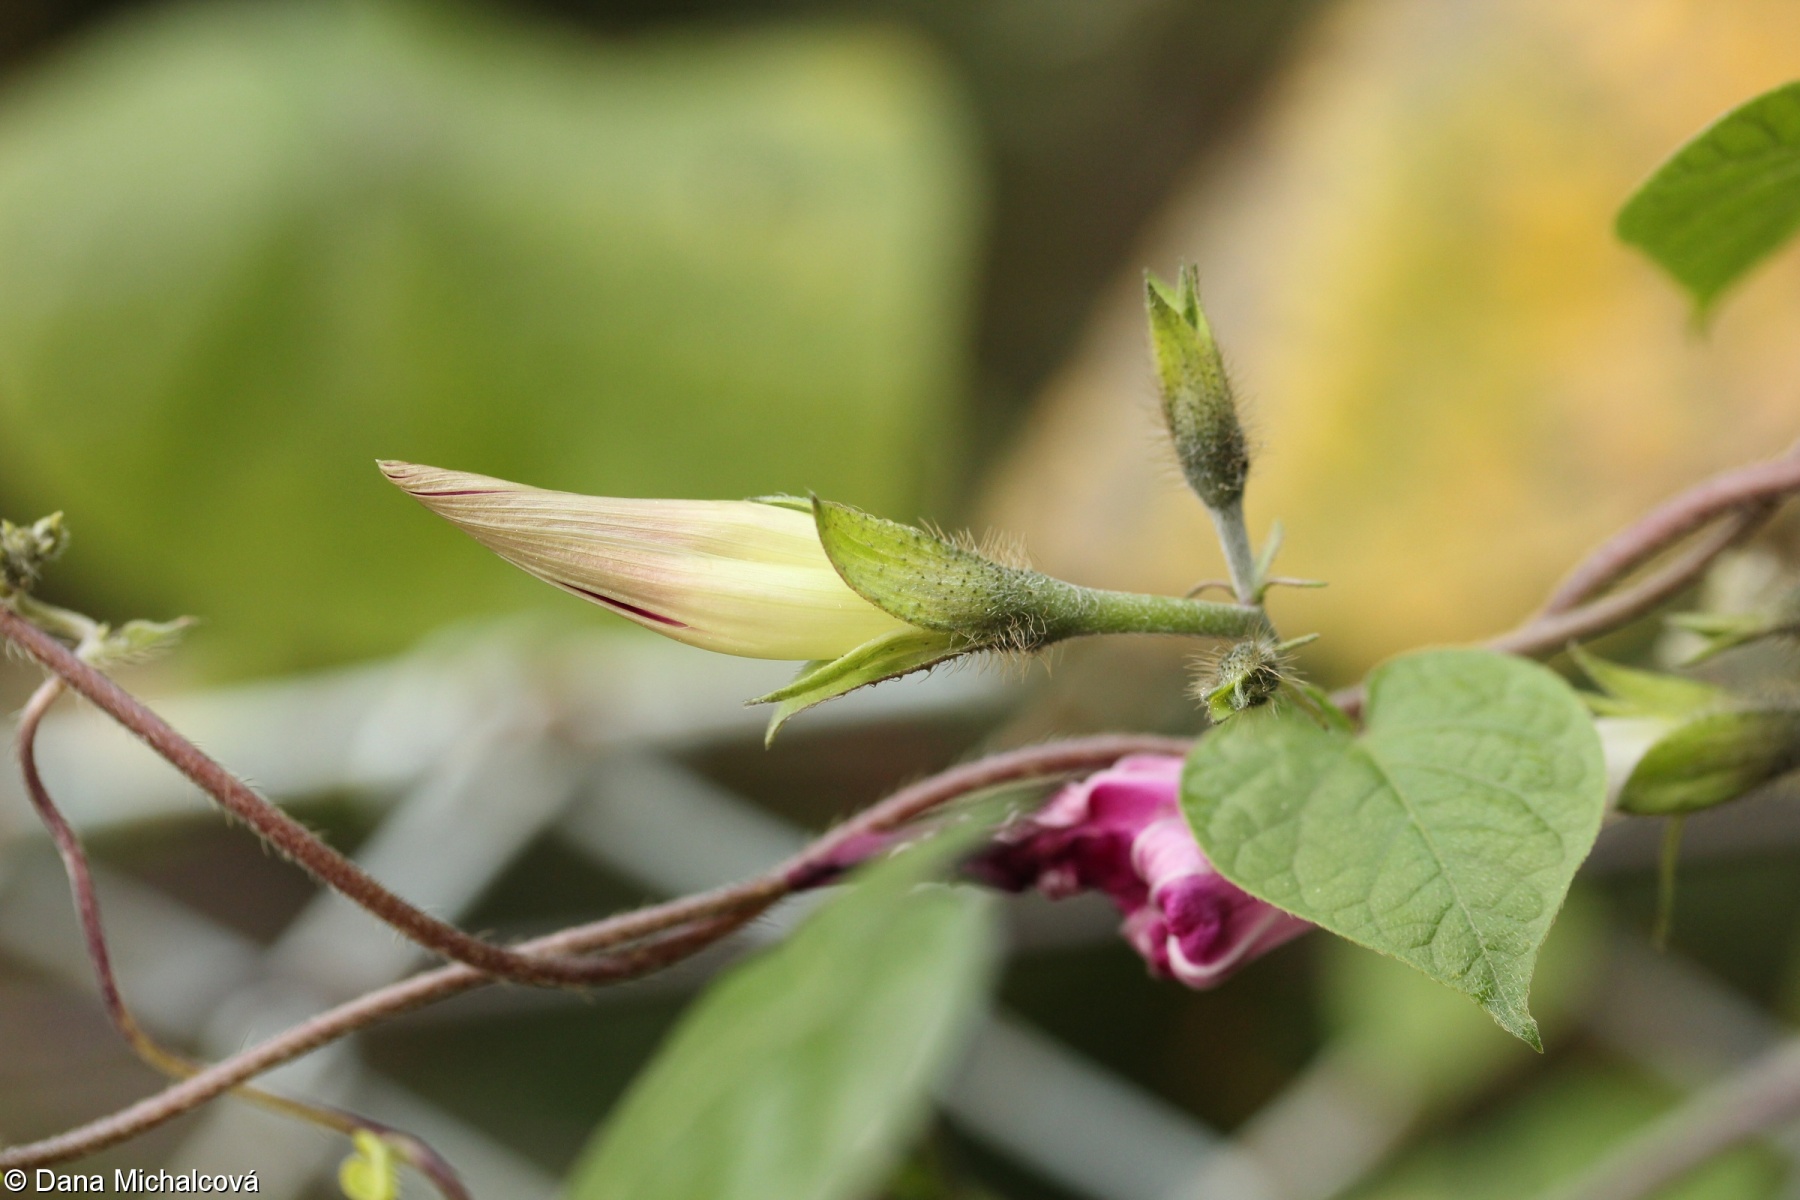 Ipomoea purpurea – povijnice nachová